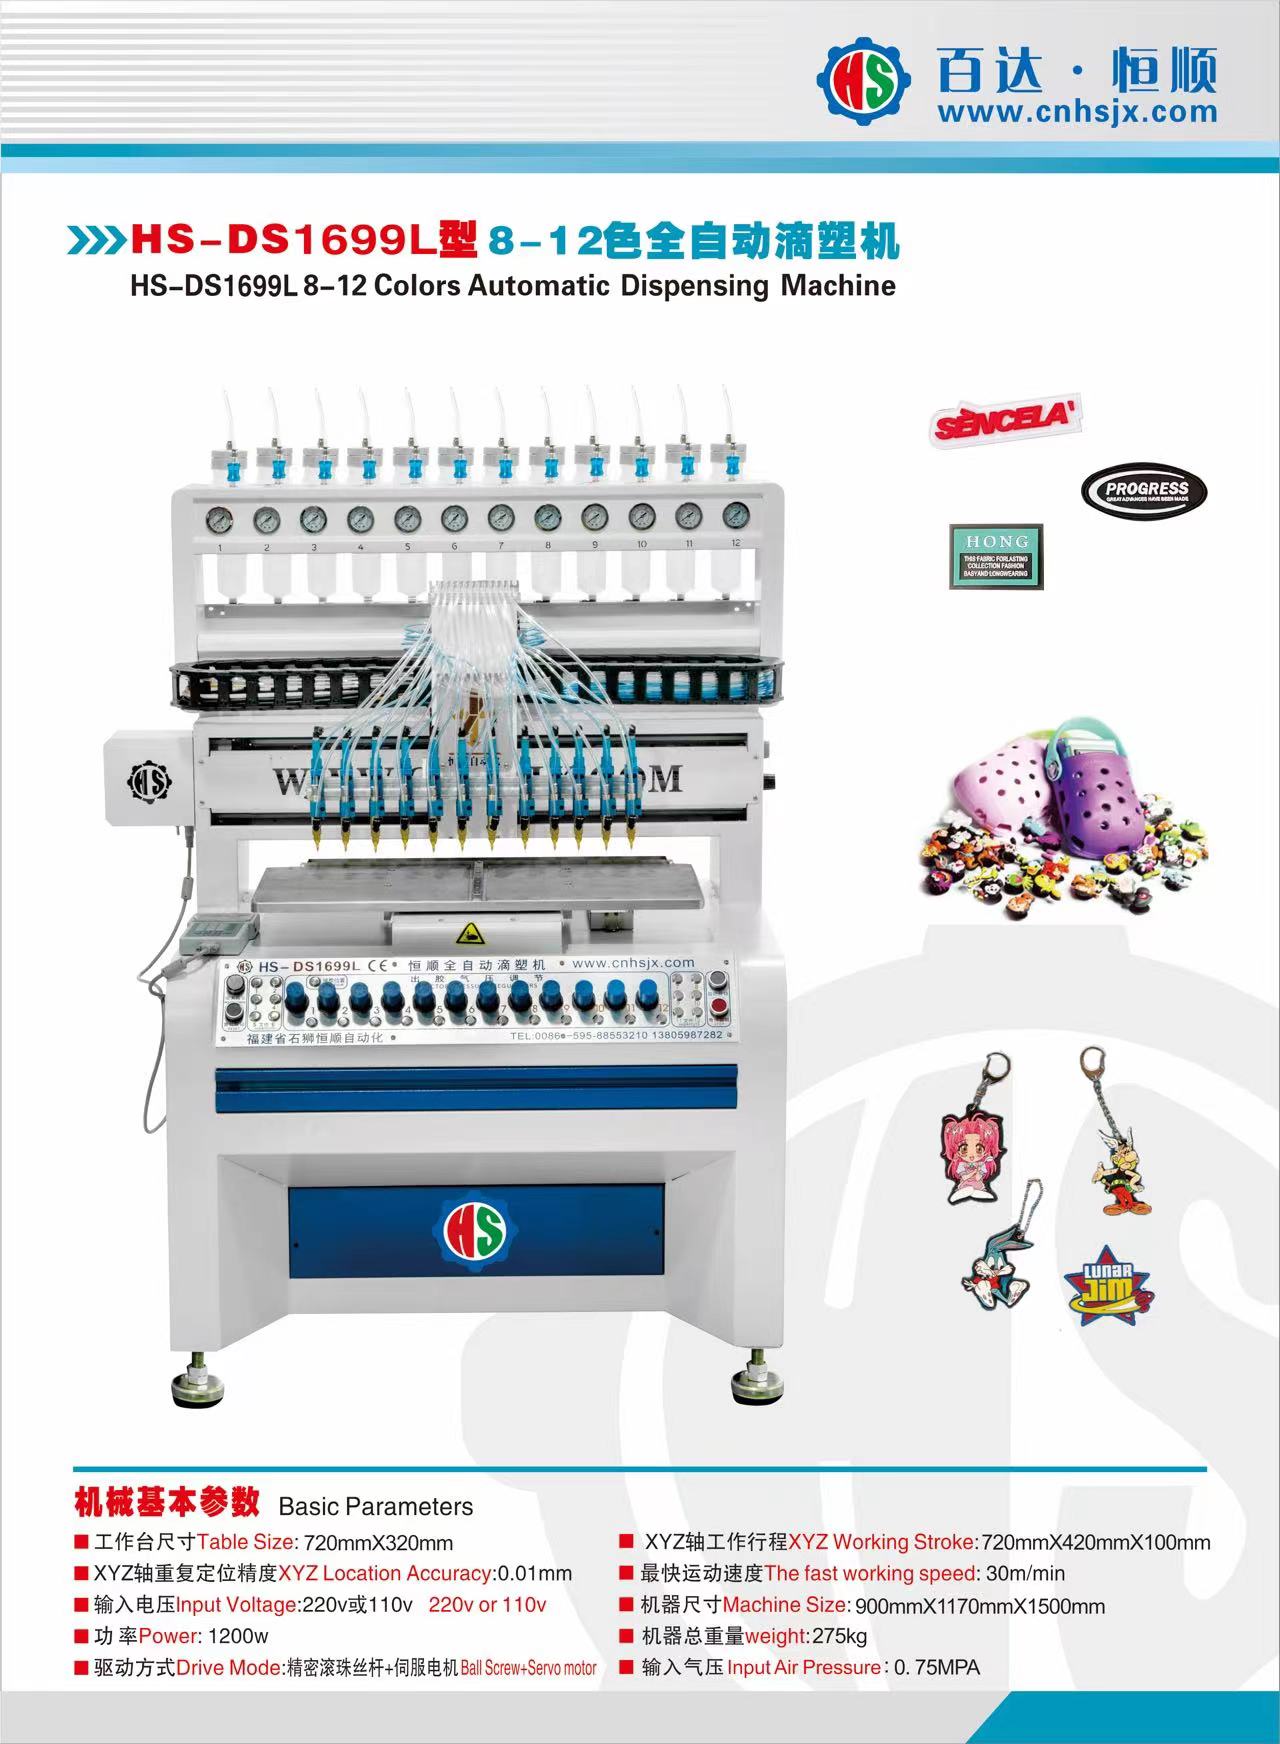 HS-DS1699L 12 Colors Automatic Dispensing Machine